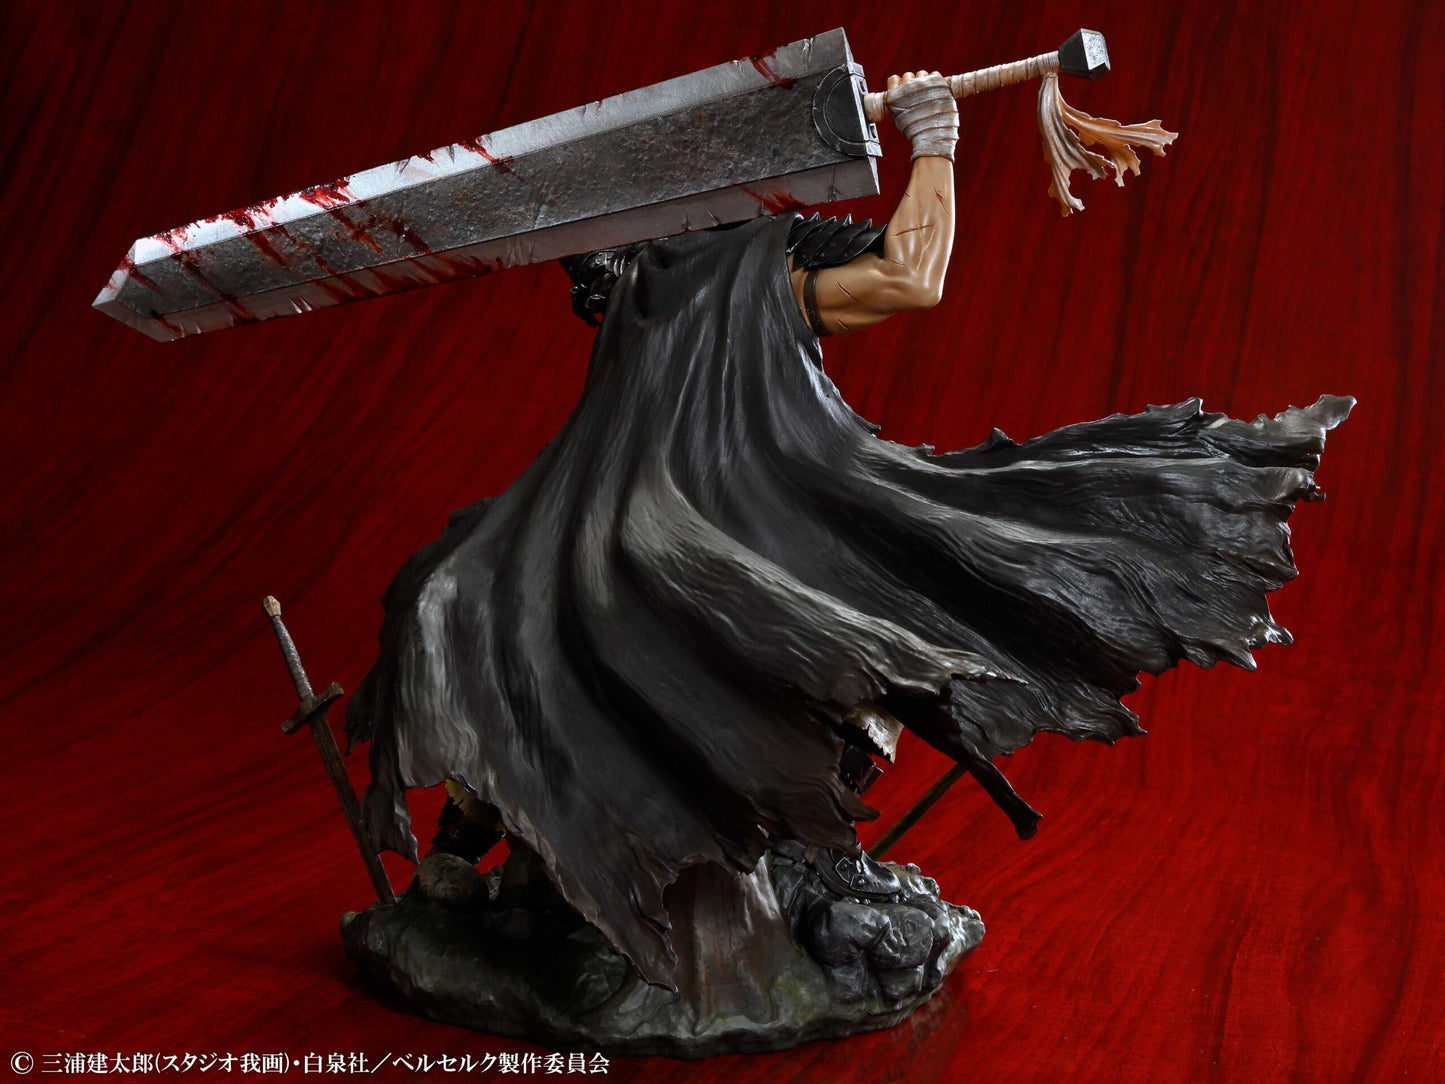 TV Anime "Berserk" Guts Black Swordsman Ver. 1/7 Complete Figure